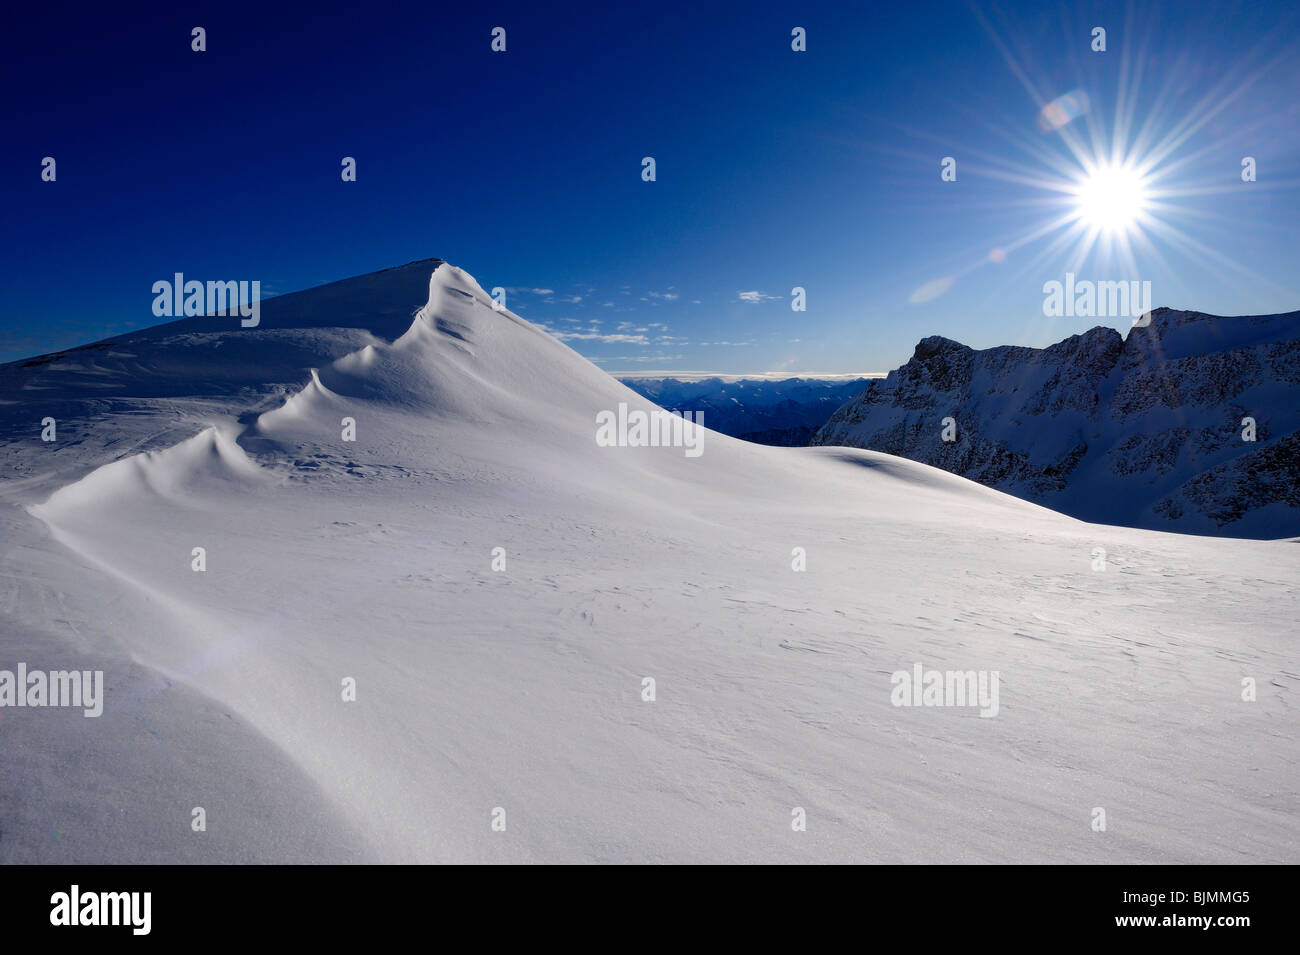 Schnee-Gesims mit blauen Himmel und sternförmige Sonne, Chur, Graubündens, der Schweiz, Europa Stockfoto